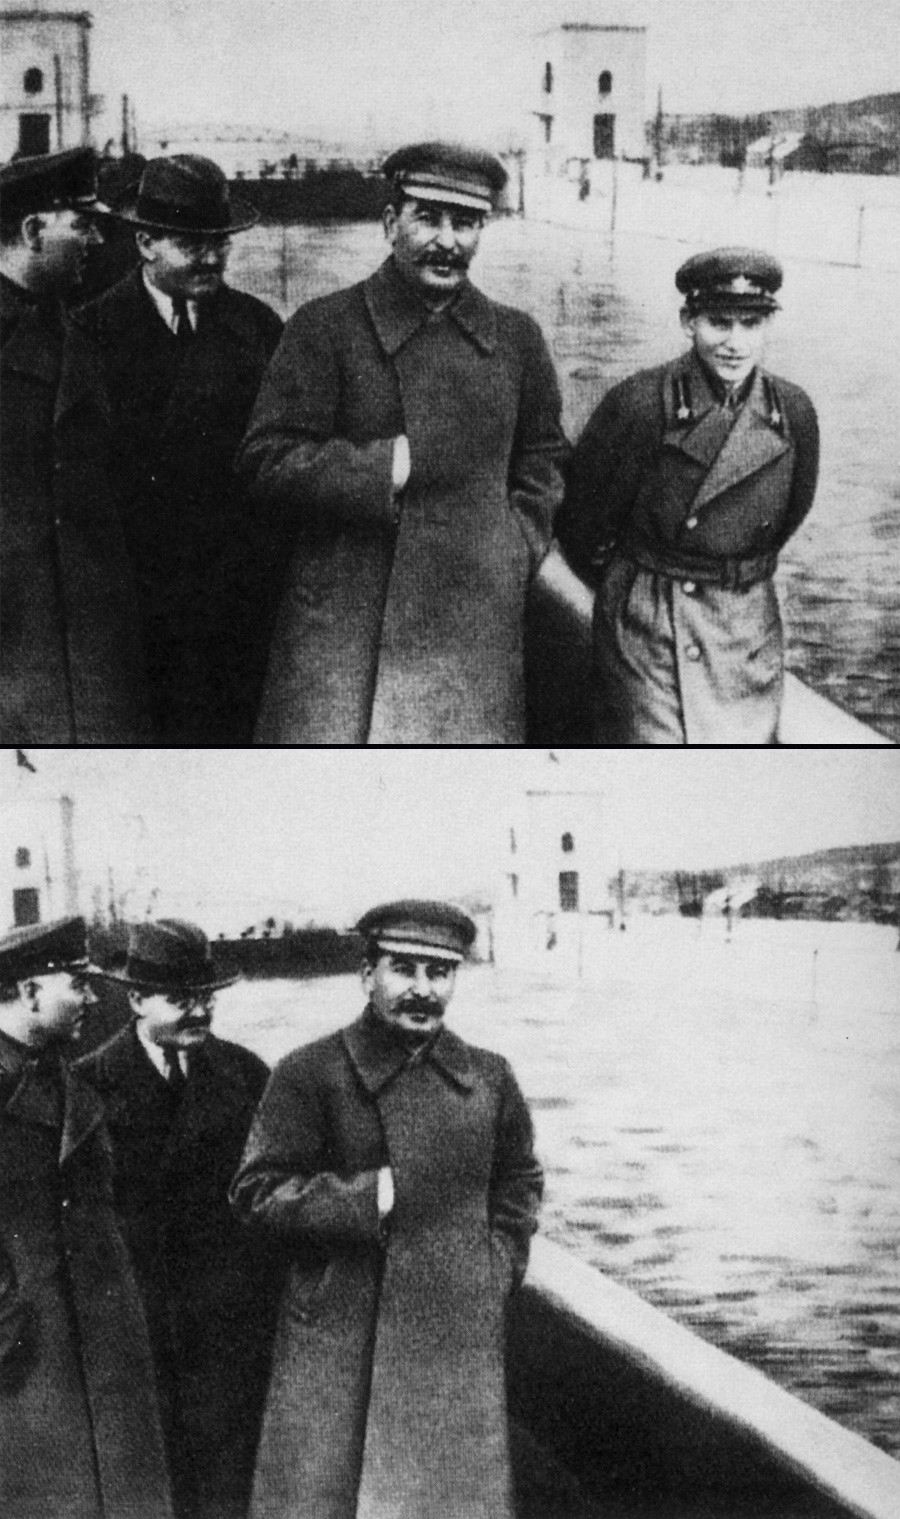 Comment L Appareil De Propagande De Staline Effacait Ses Ennemis Des Photographies Russia Beyond Fr